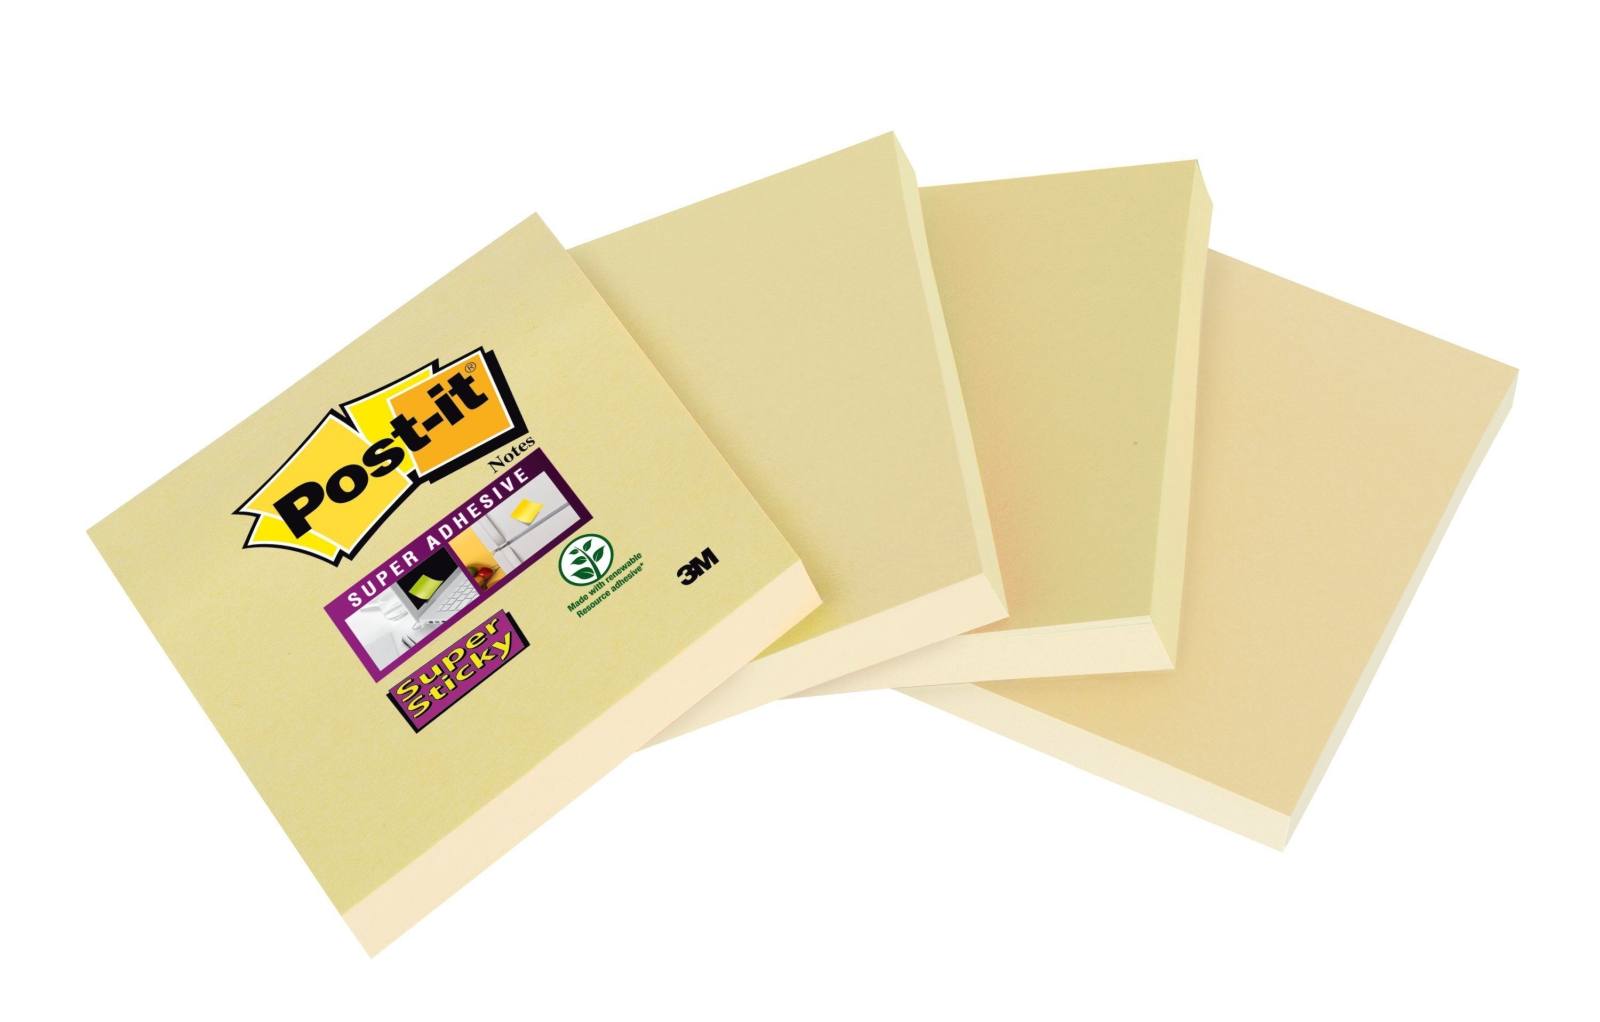  3M Post-it Super Sticky Notes 6910CY, 48 x 48 mm, keltainen, 4 kpl 45 arkin lehtiä kukin